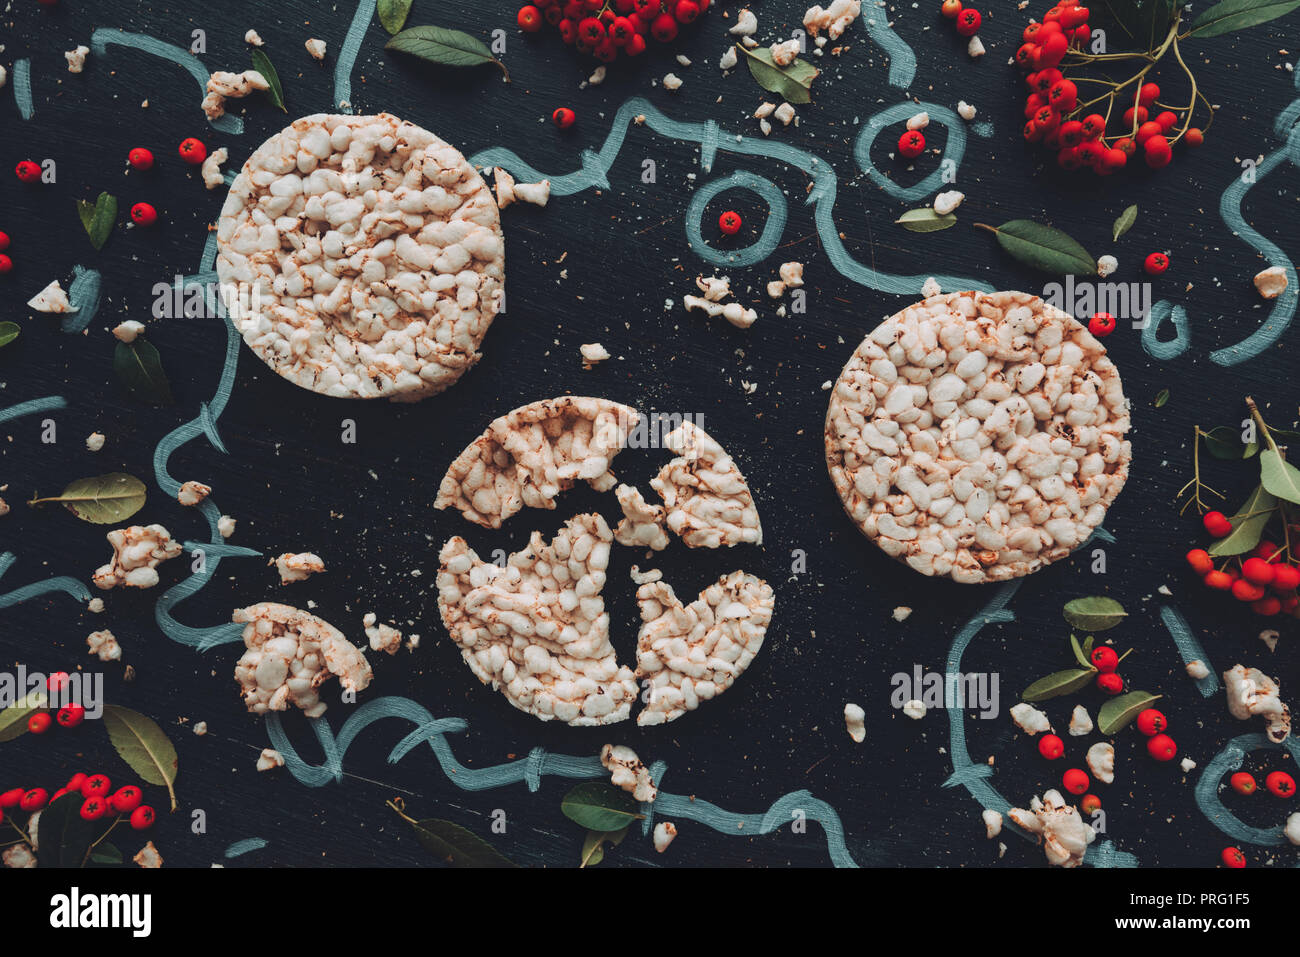 Lay piatto croccante e torte di riso sul legno scuro dello sfondo con composizioni floreali background, overhead vista dall'alto in basso Foto Stock